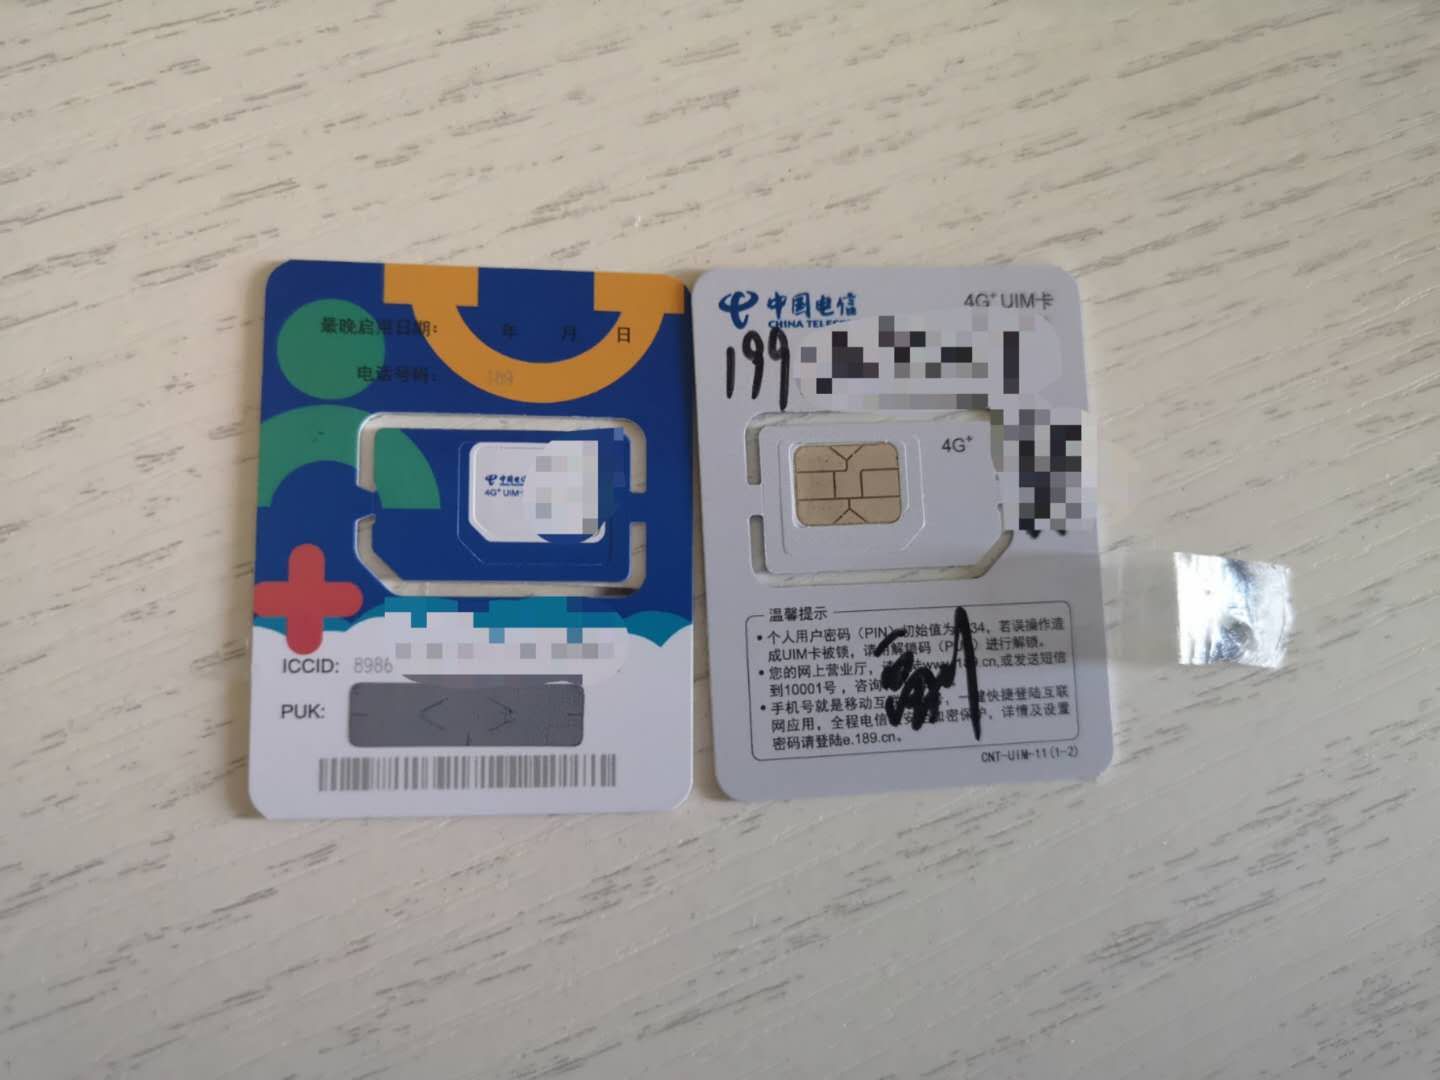 在家中打扫卫生时,发现了三张全新电信手机卡